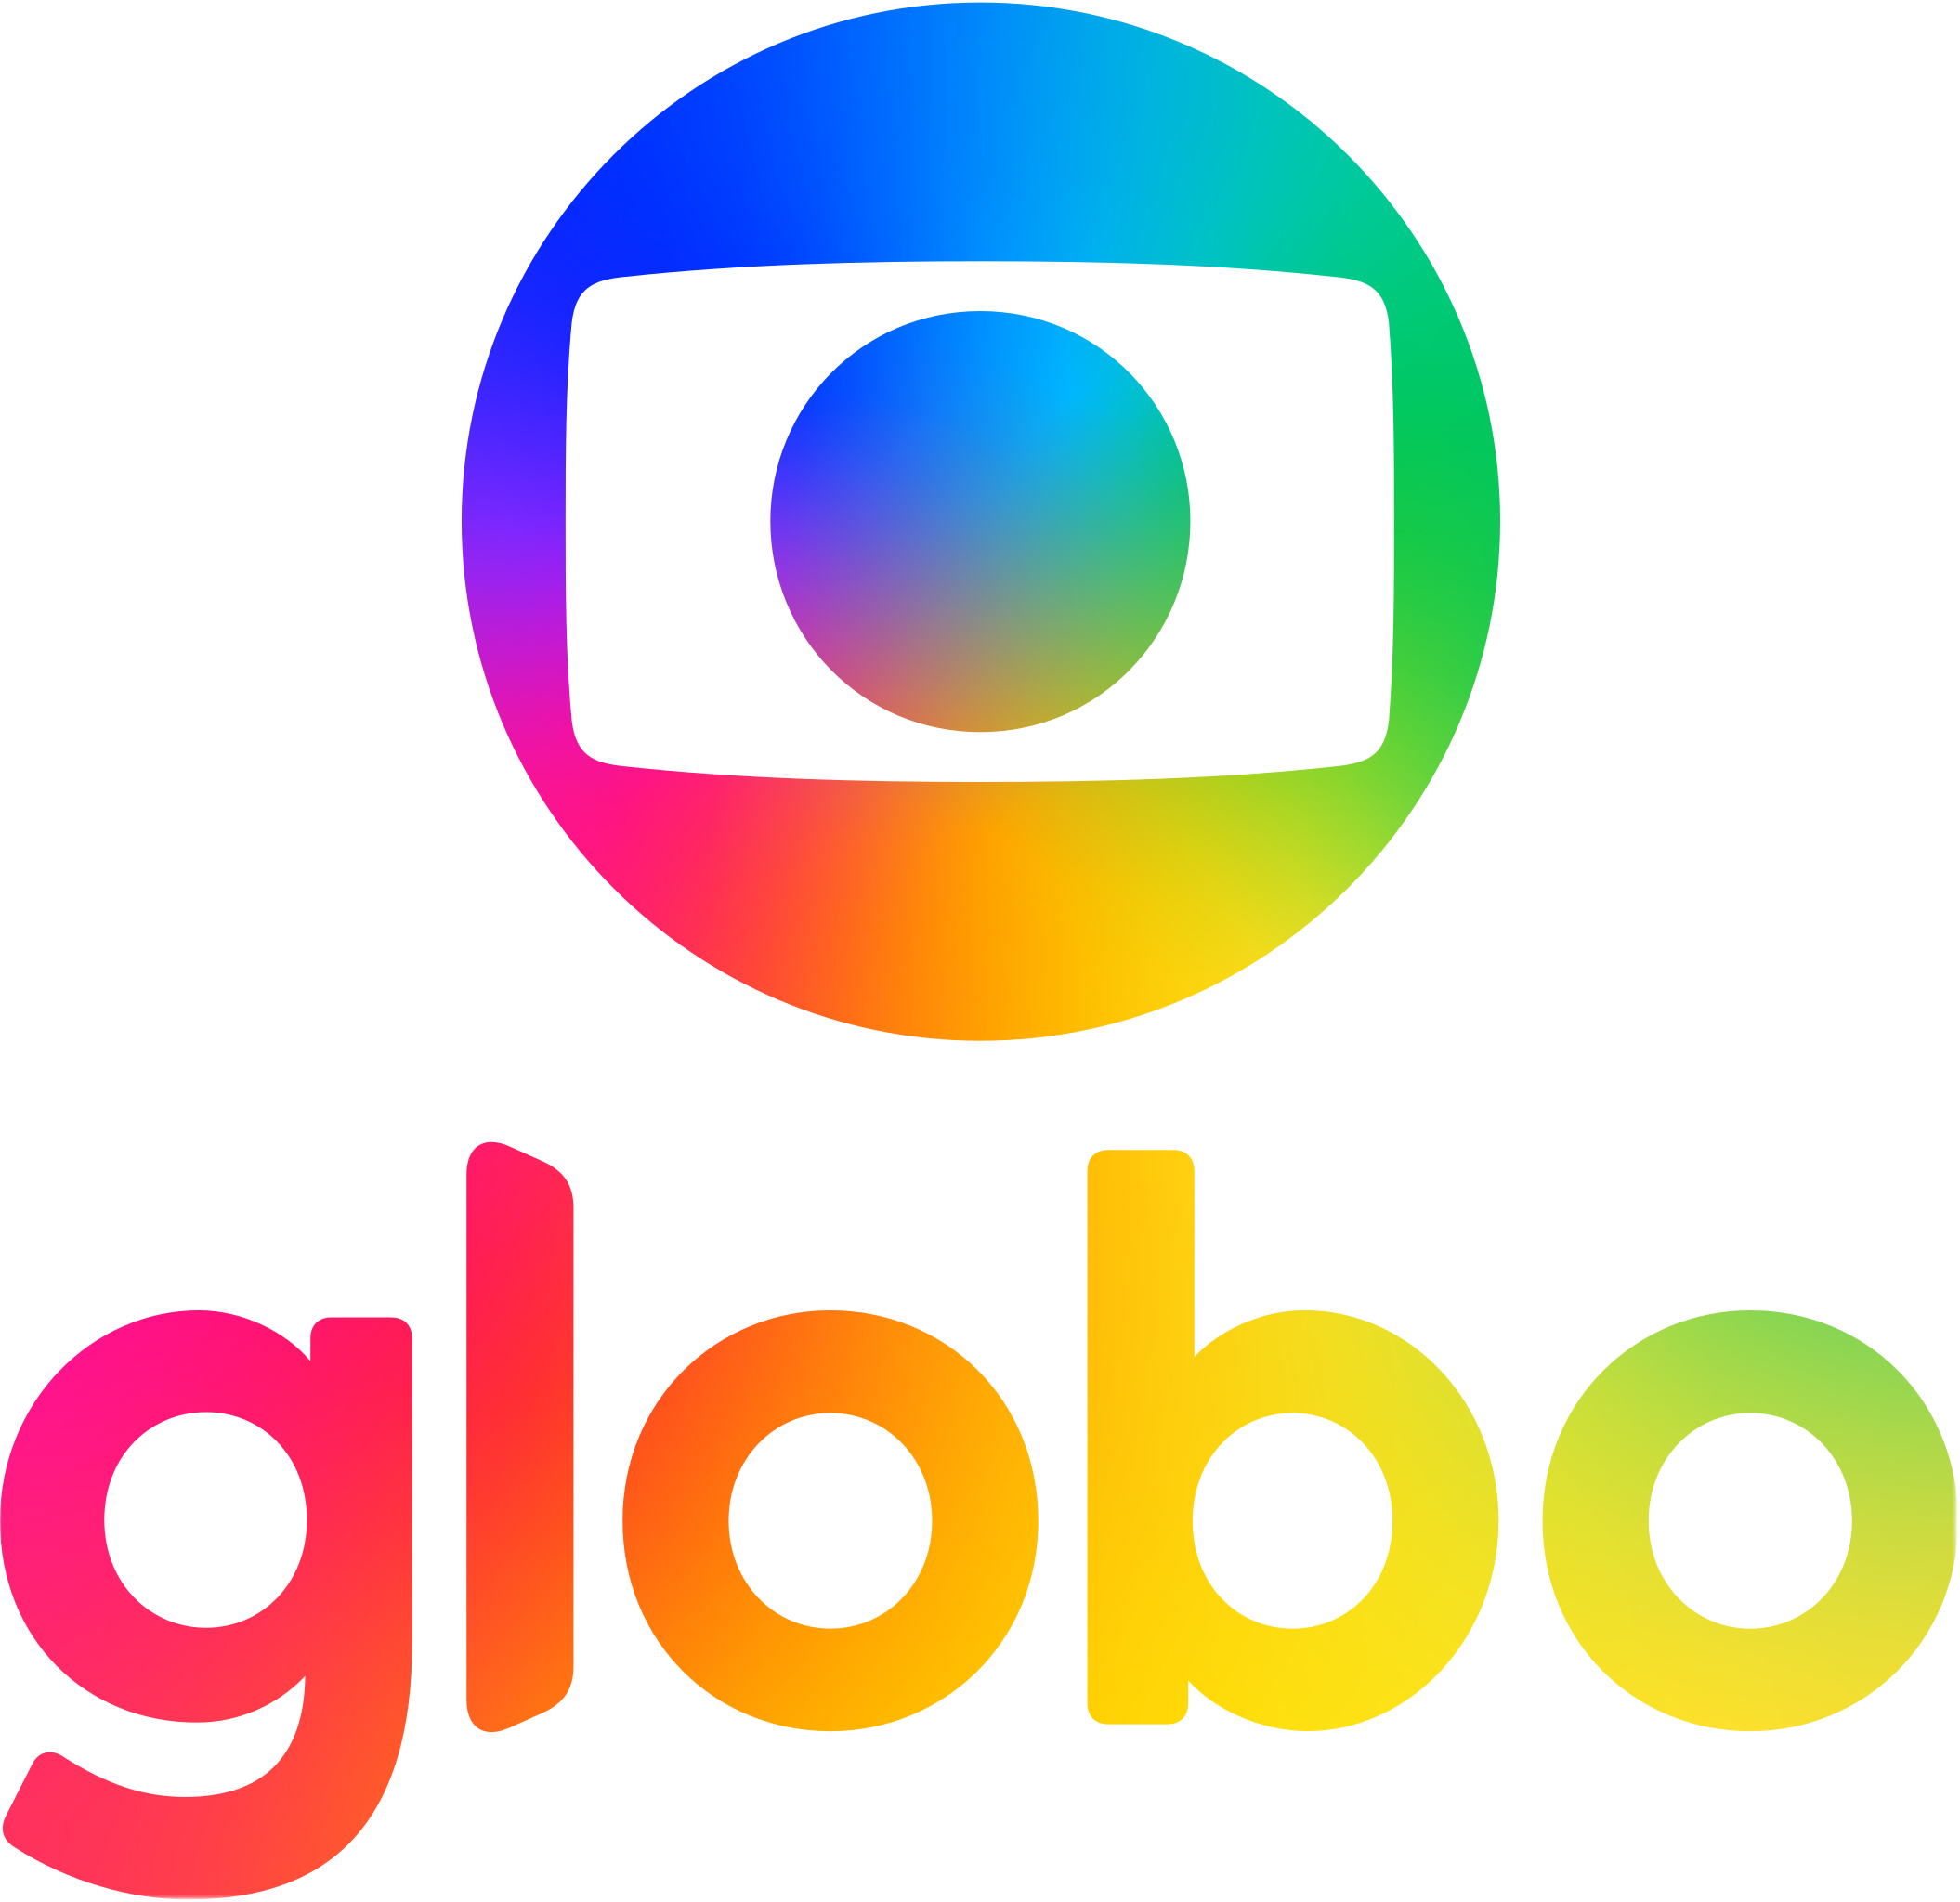 Globo logo 2020 .svg